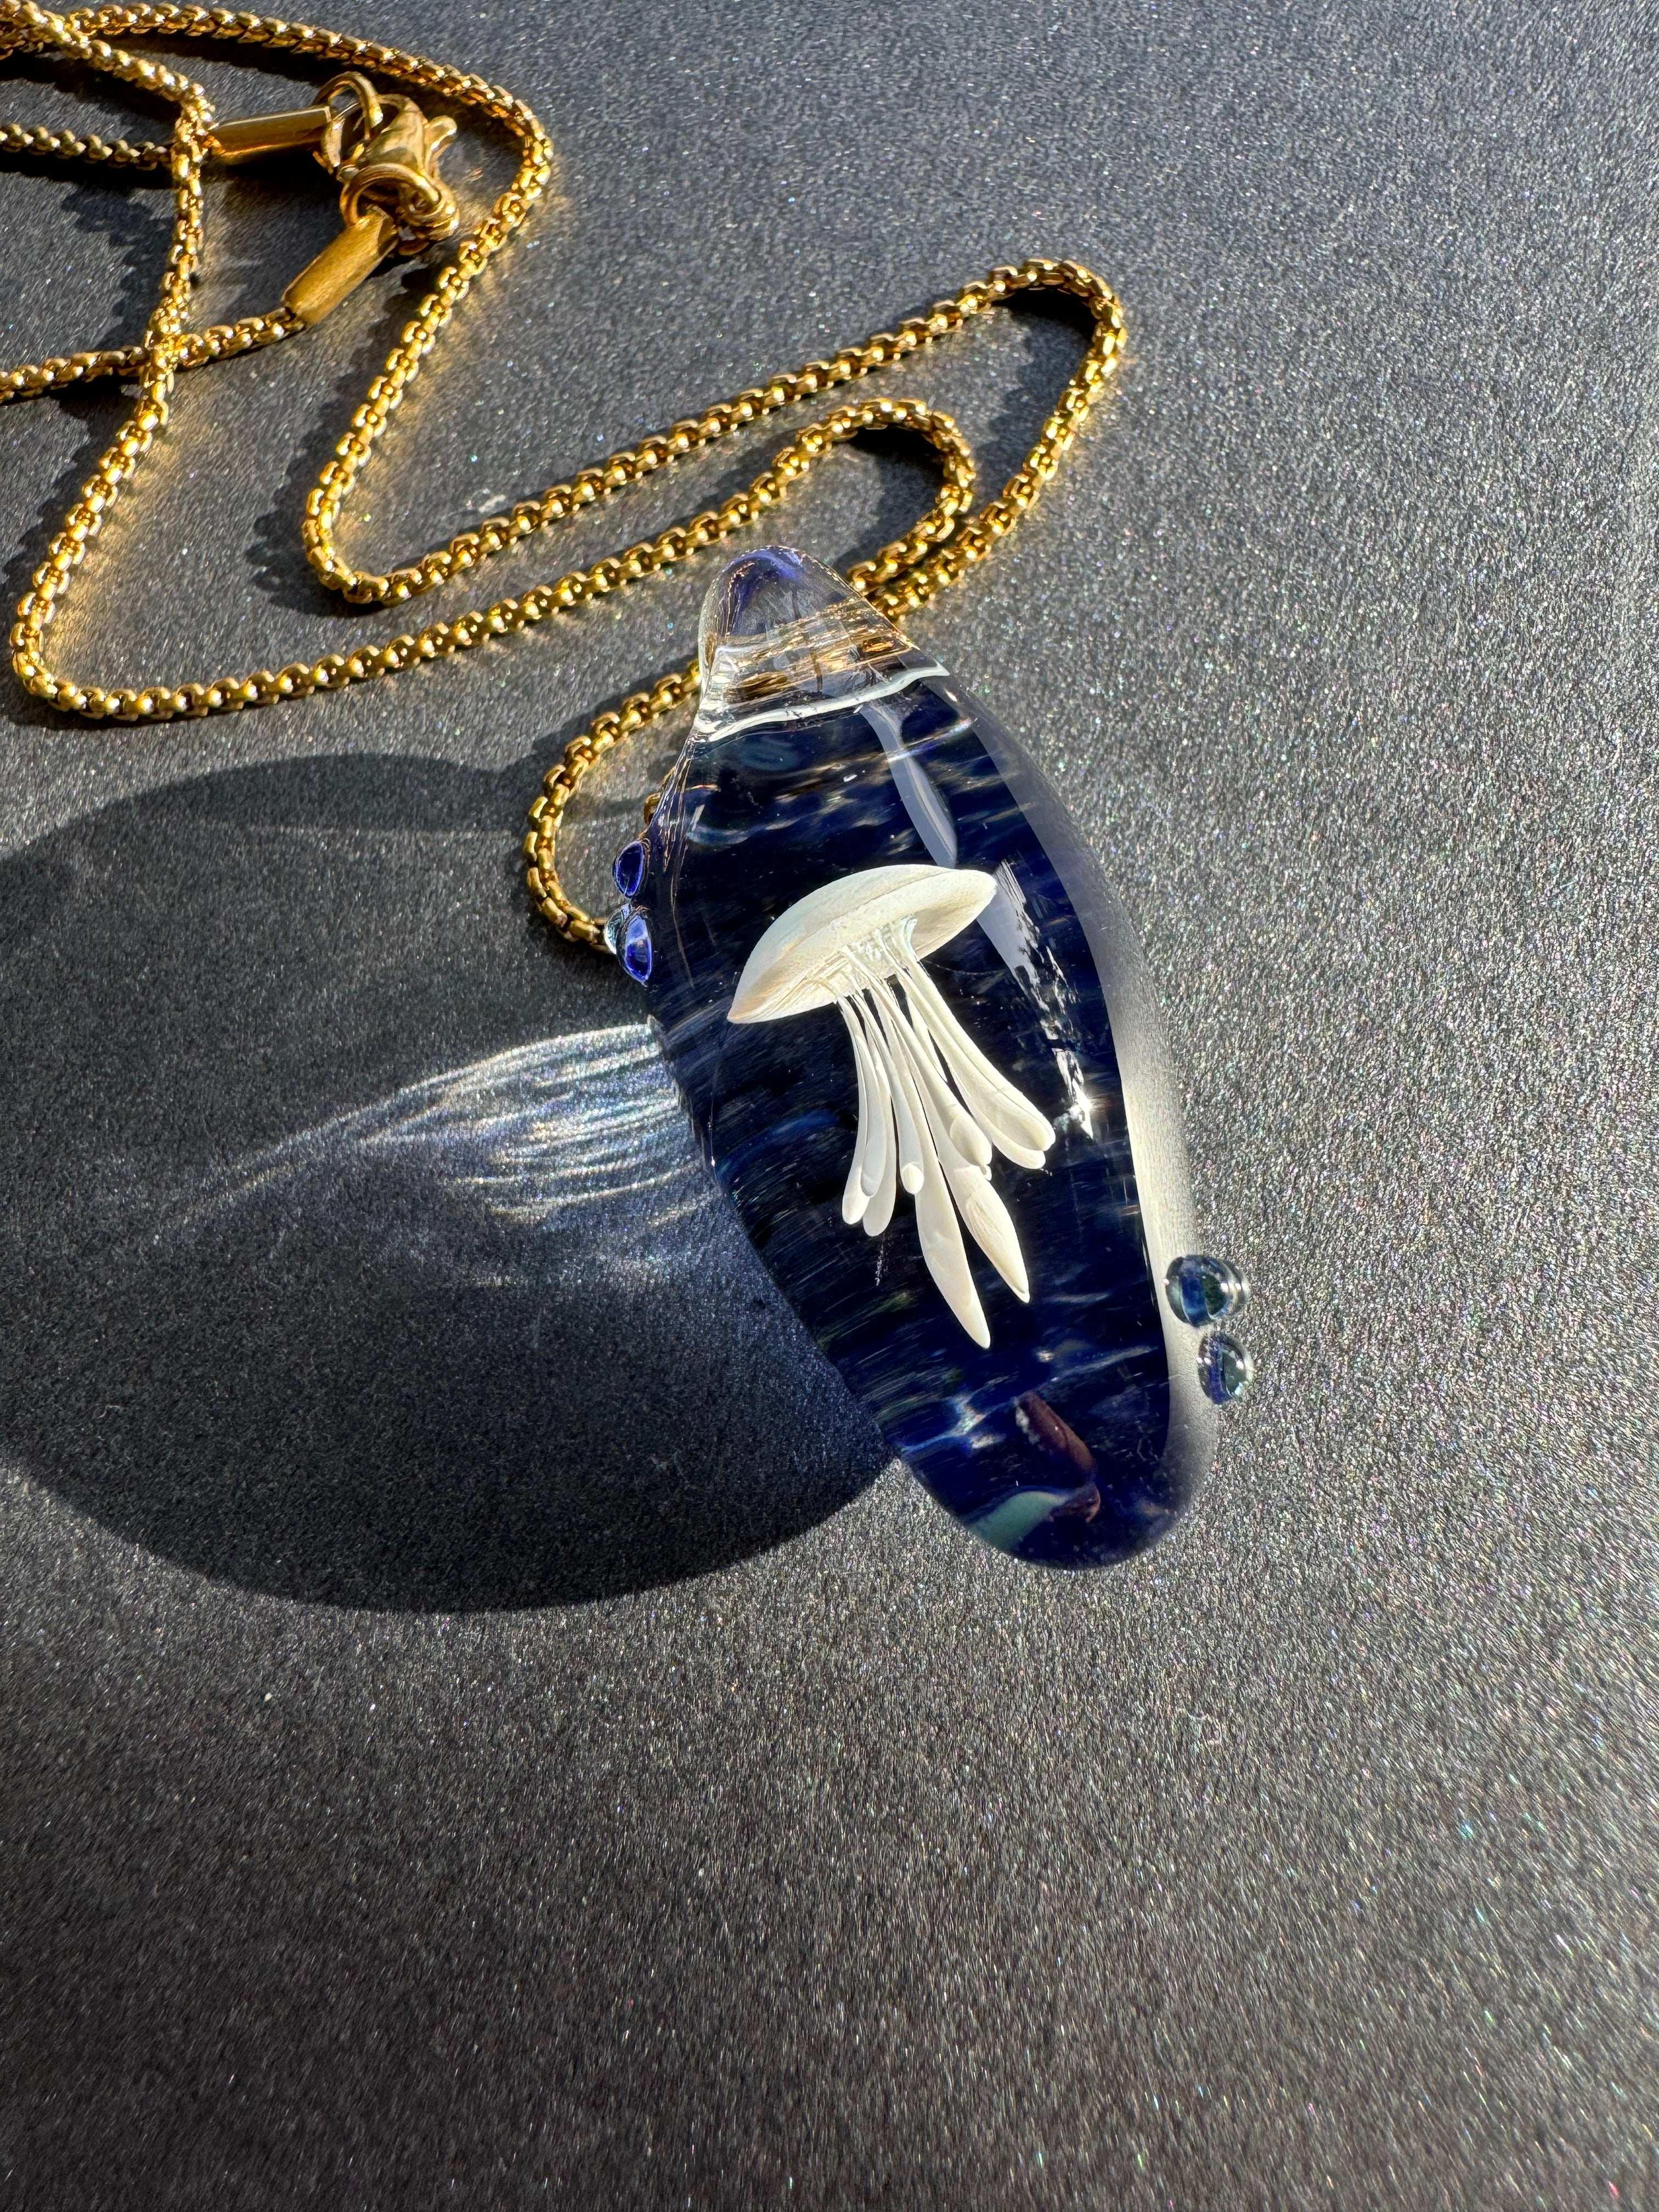 White and Dark Blue Jellyfish Pendant